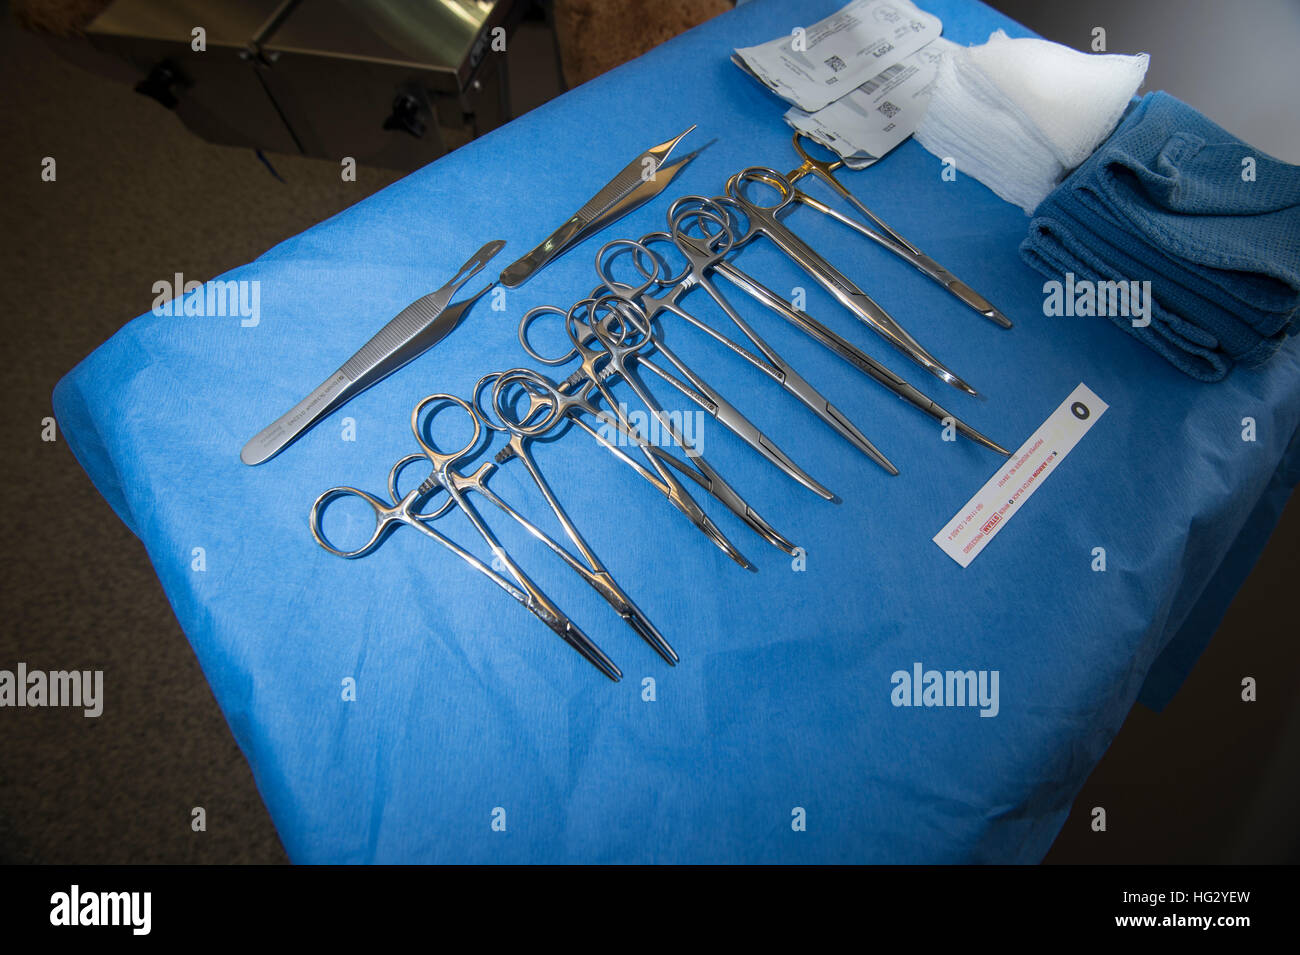 Instruments chirurgicaux en salle d'opération, USA Banque D'Images